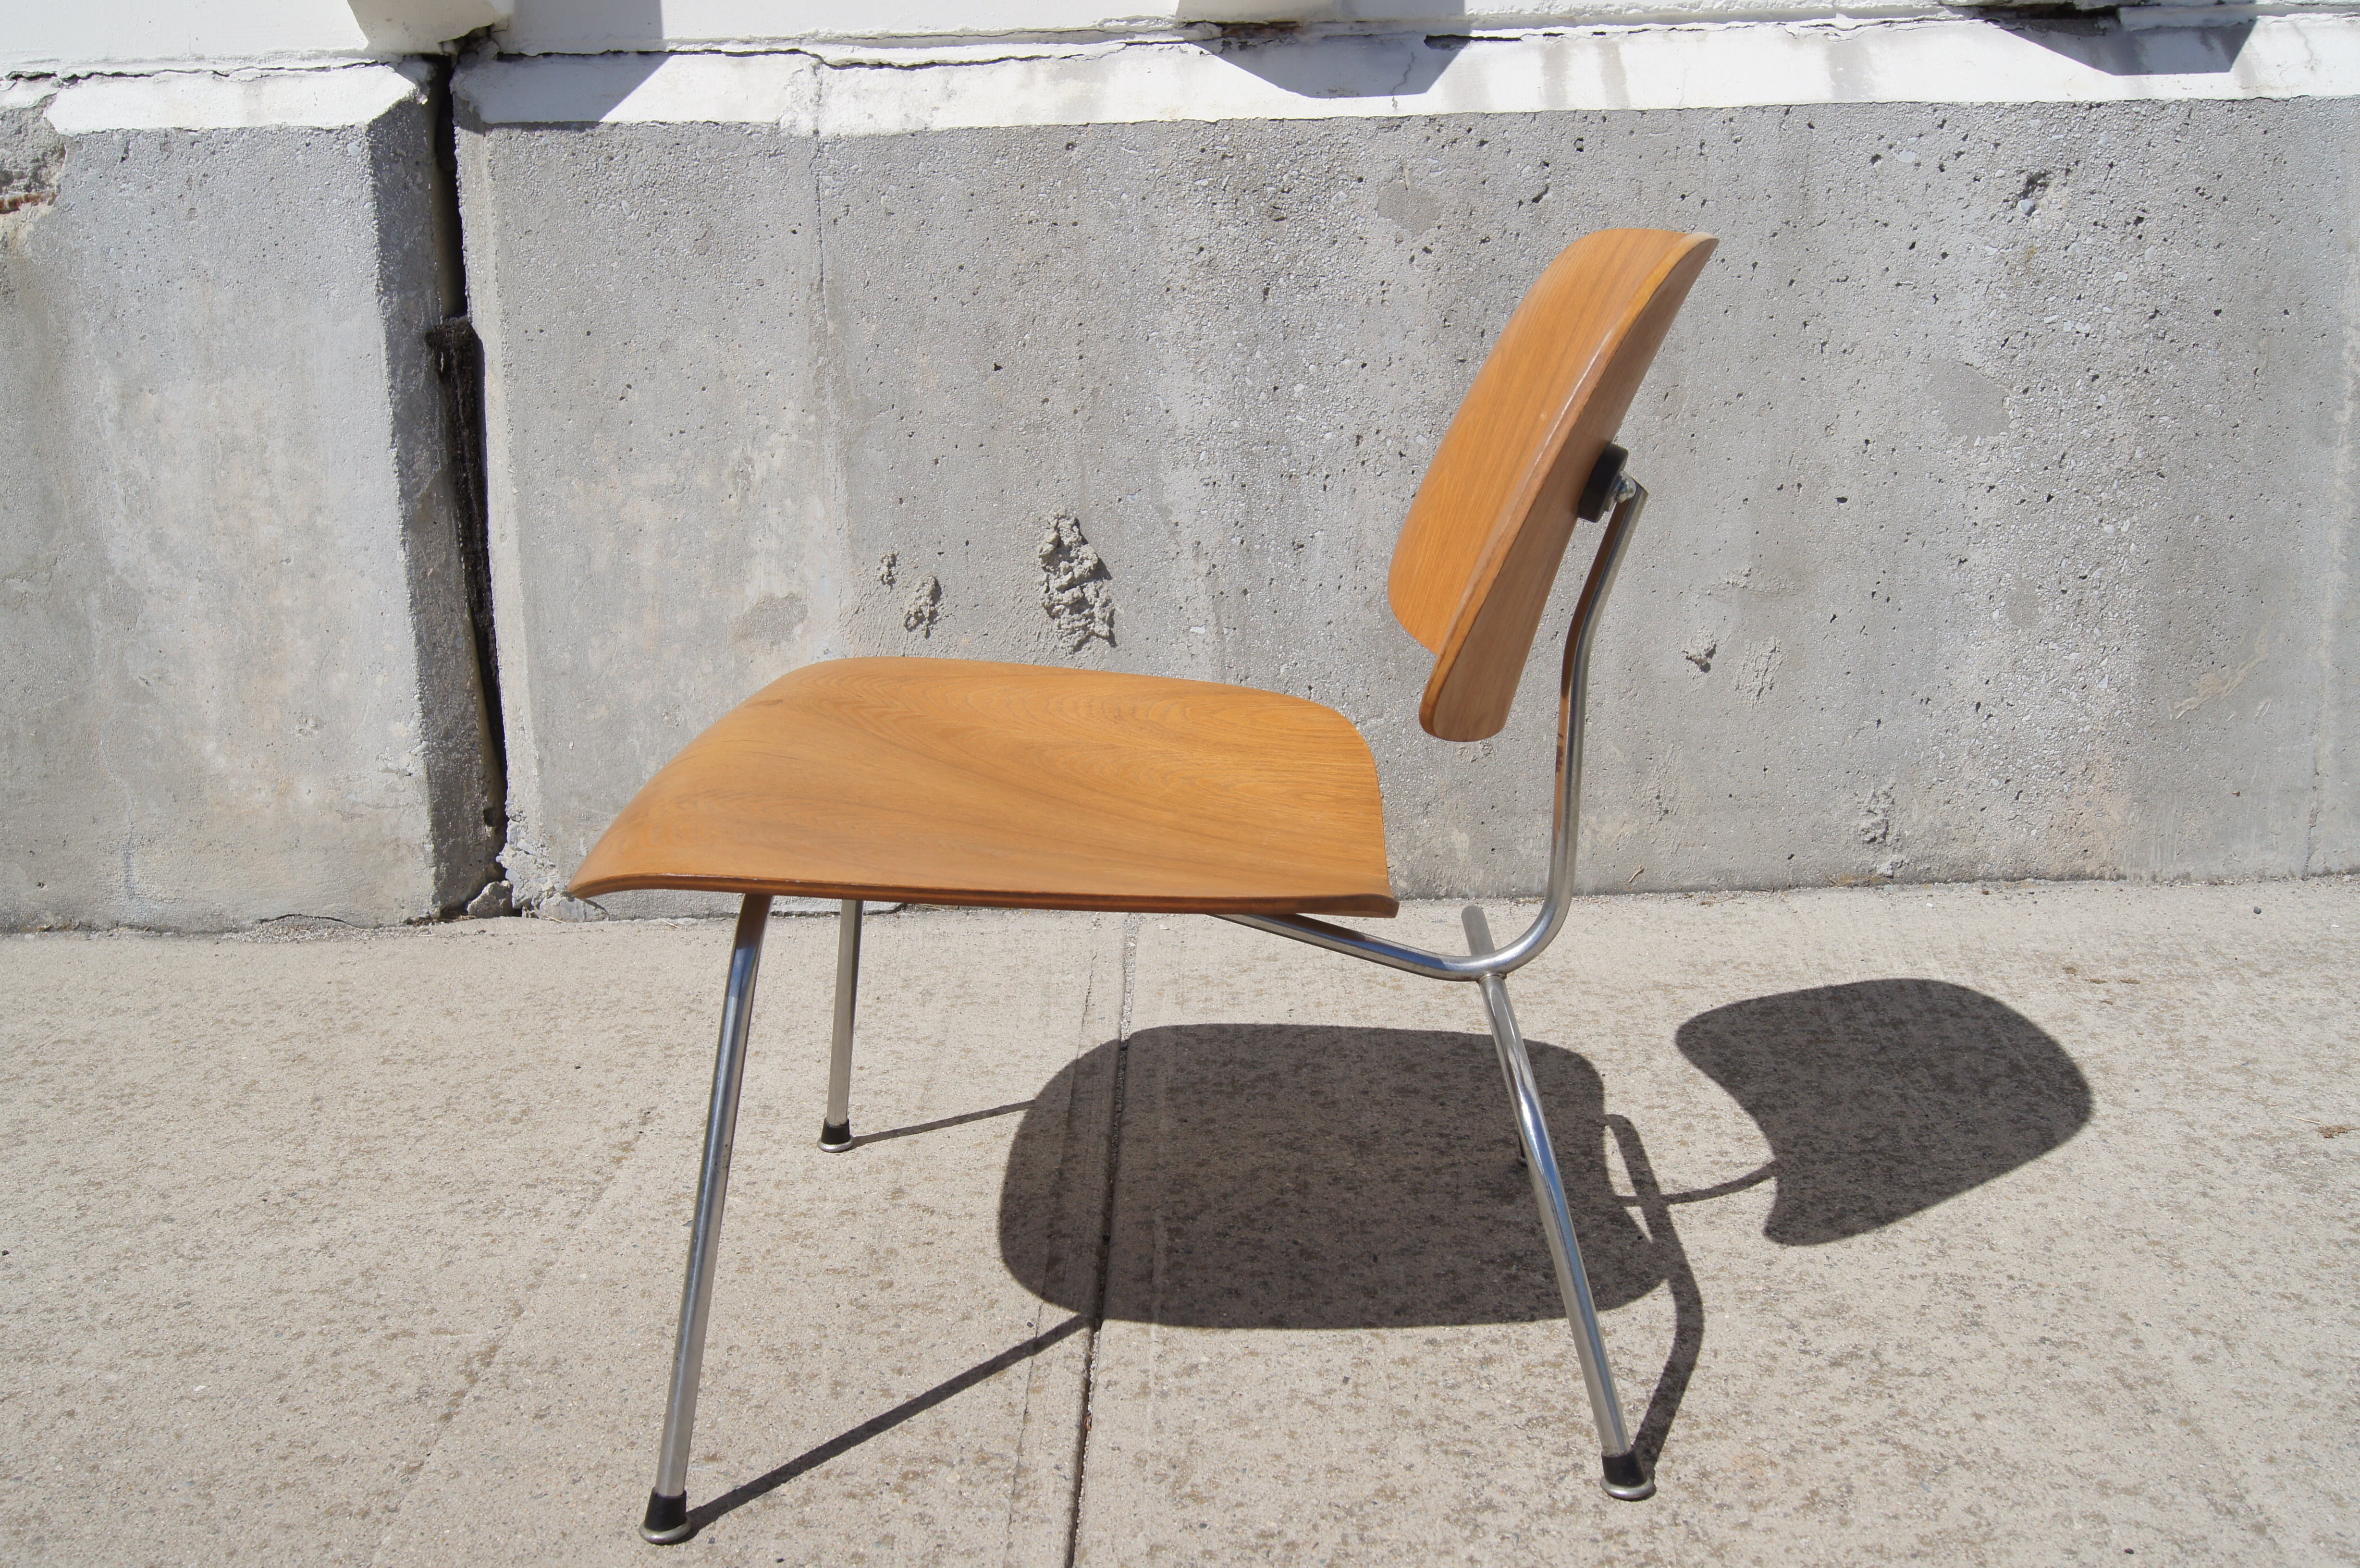 Diese Herman Miller-Produktion des klassischen LCM-Stuhls aus gebogenem Sperrholz von Charles und Ray Eames aus den frühen 1950er Jahren in Eiche und Chrom hat alle Originalteile und ist in sehr gutem Vintage-Zustand.